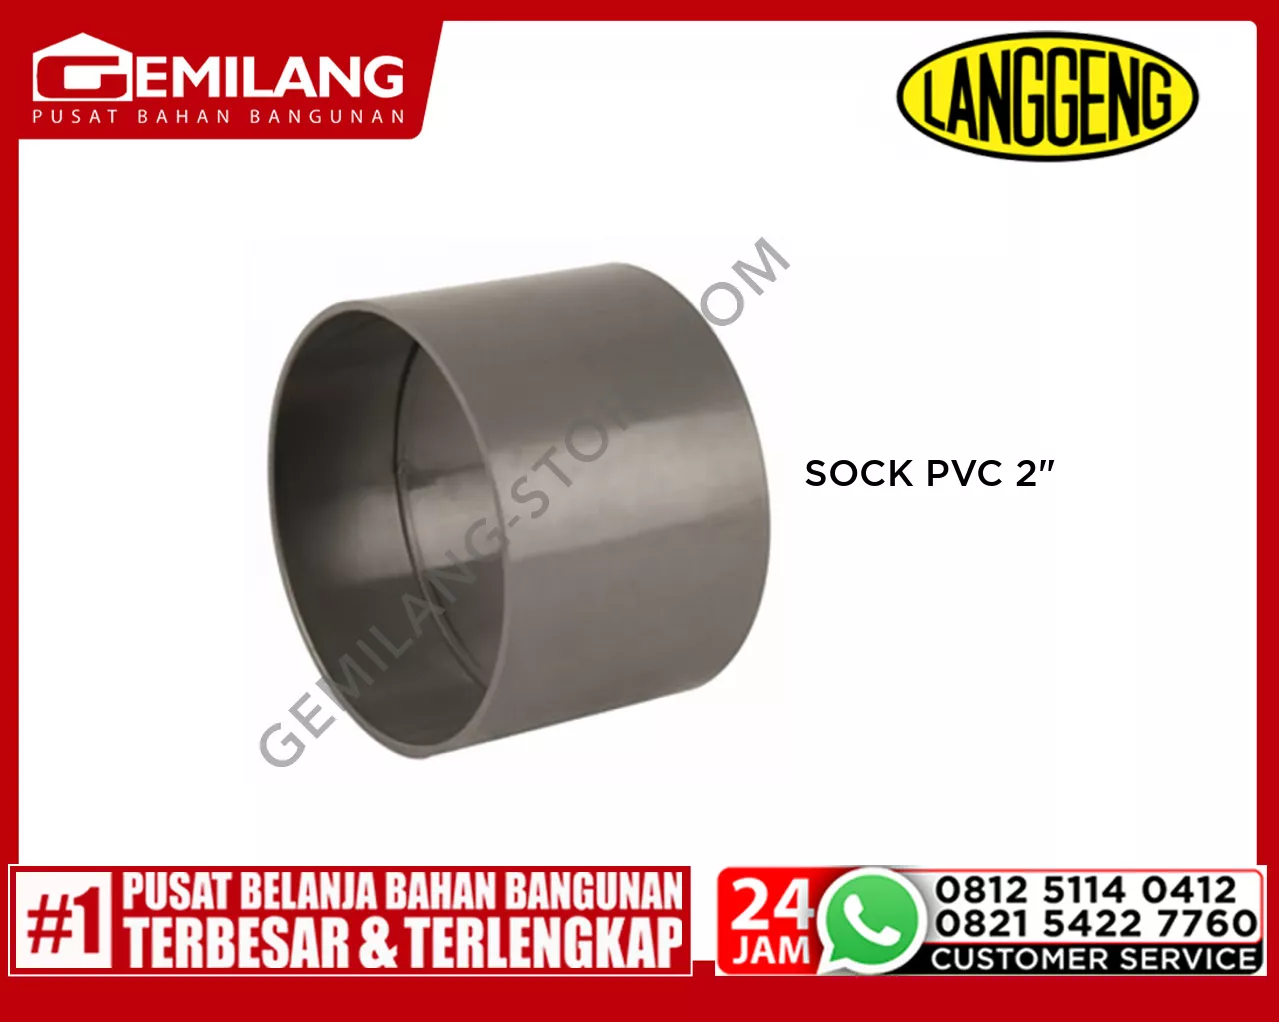 LANGGENG SOCK PVC 2inch